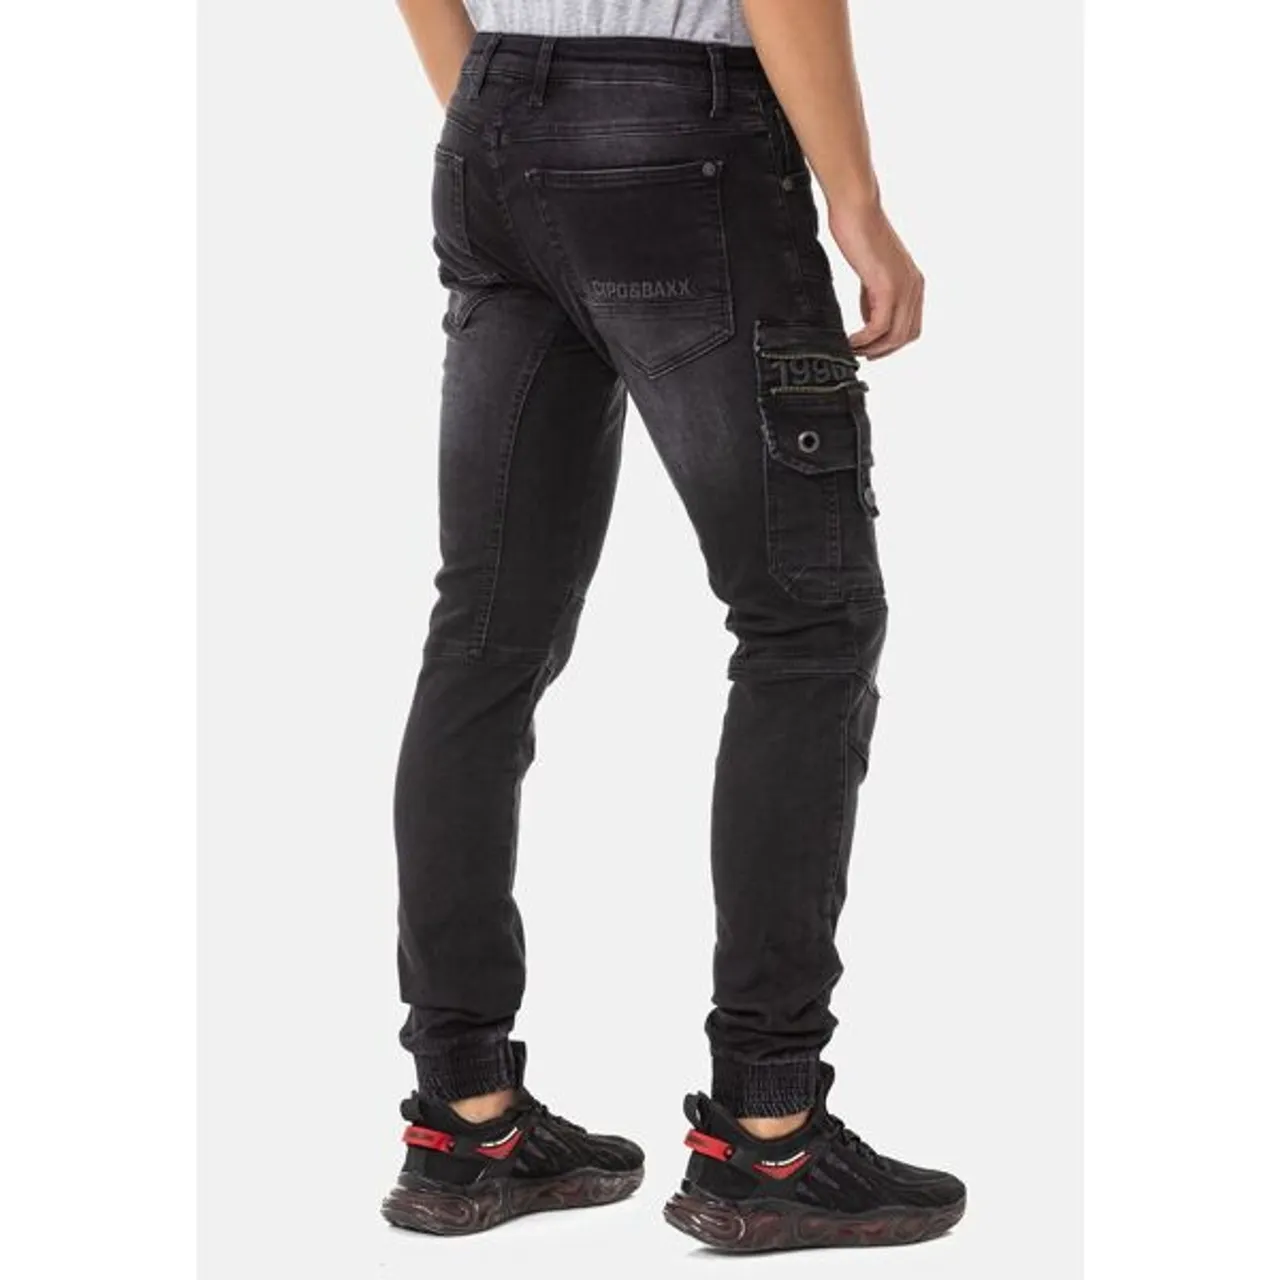 Bequeme Jeans CIPO & BAXX Gr. 29, Länge 34, schwarz Herren Jeans